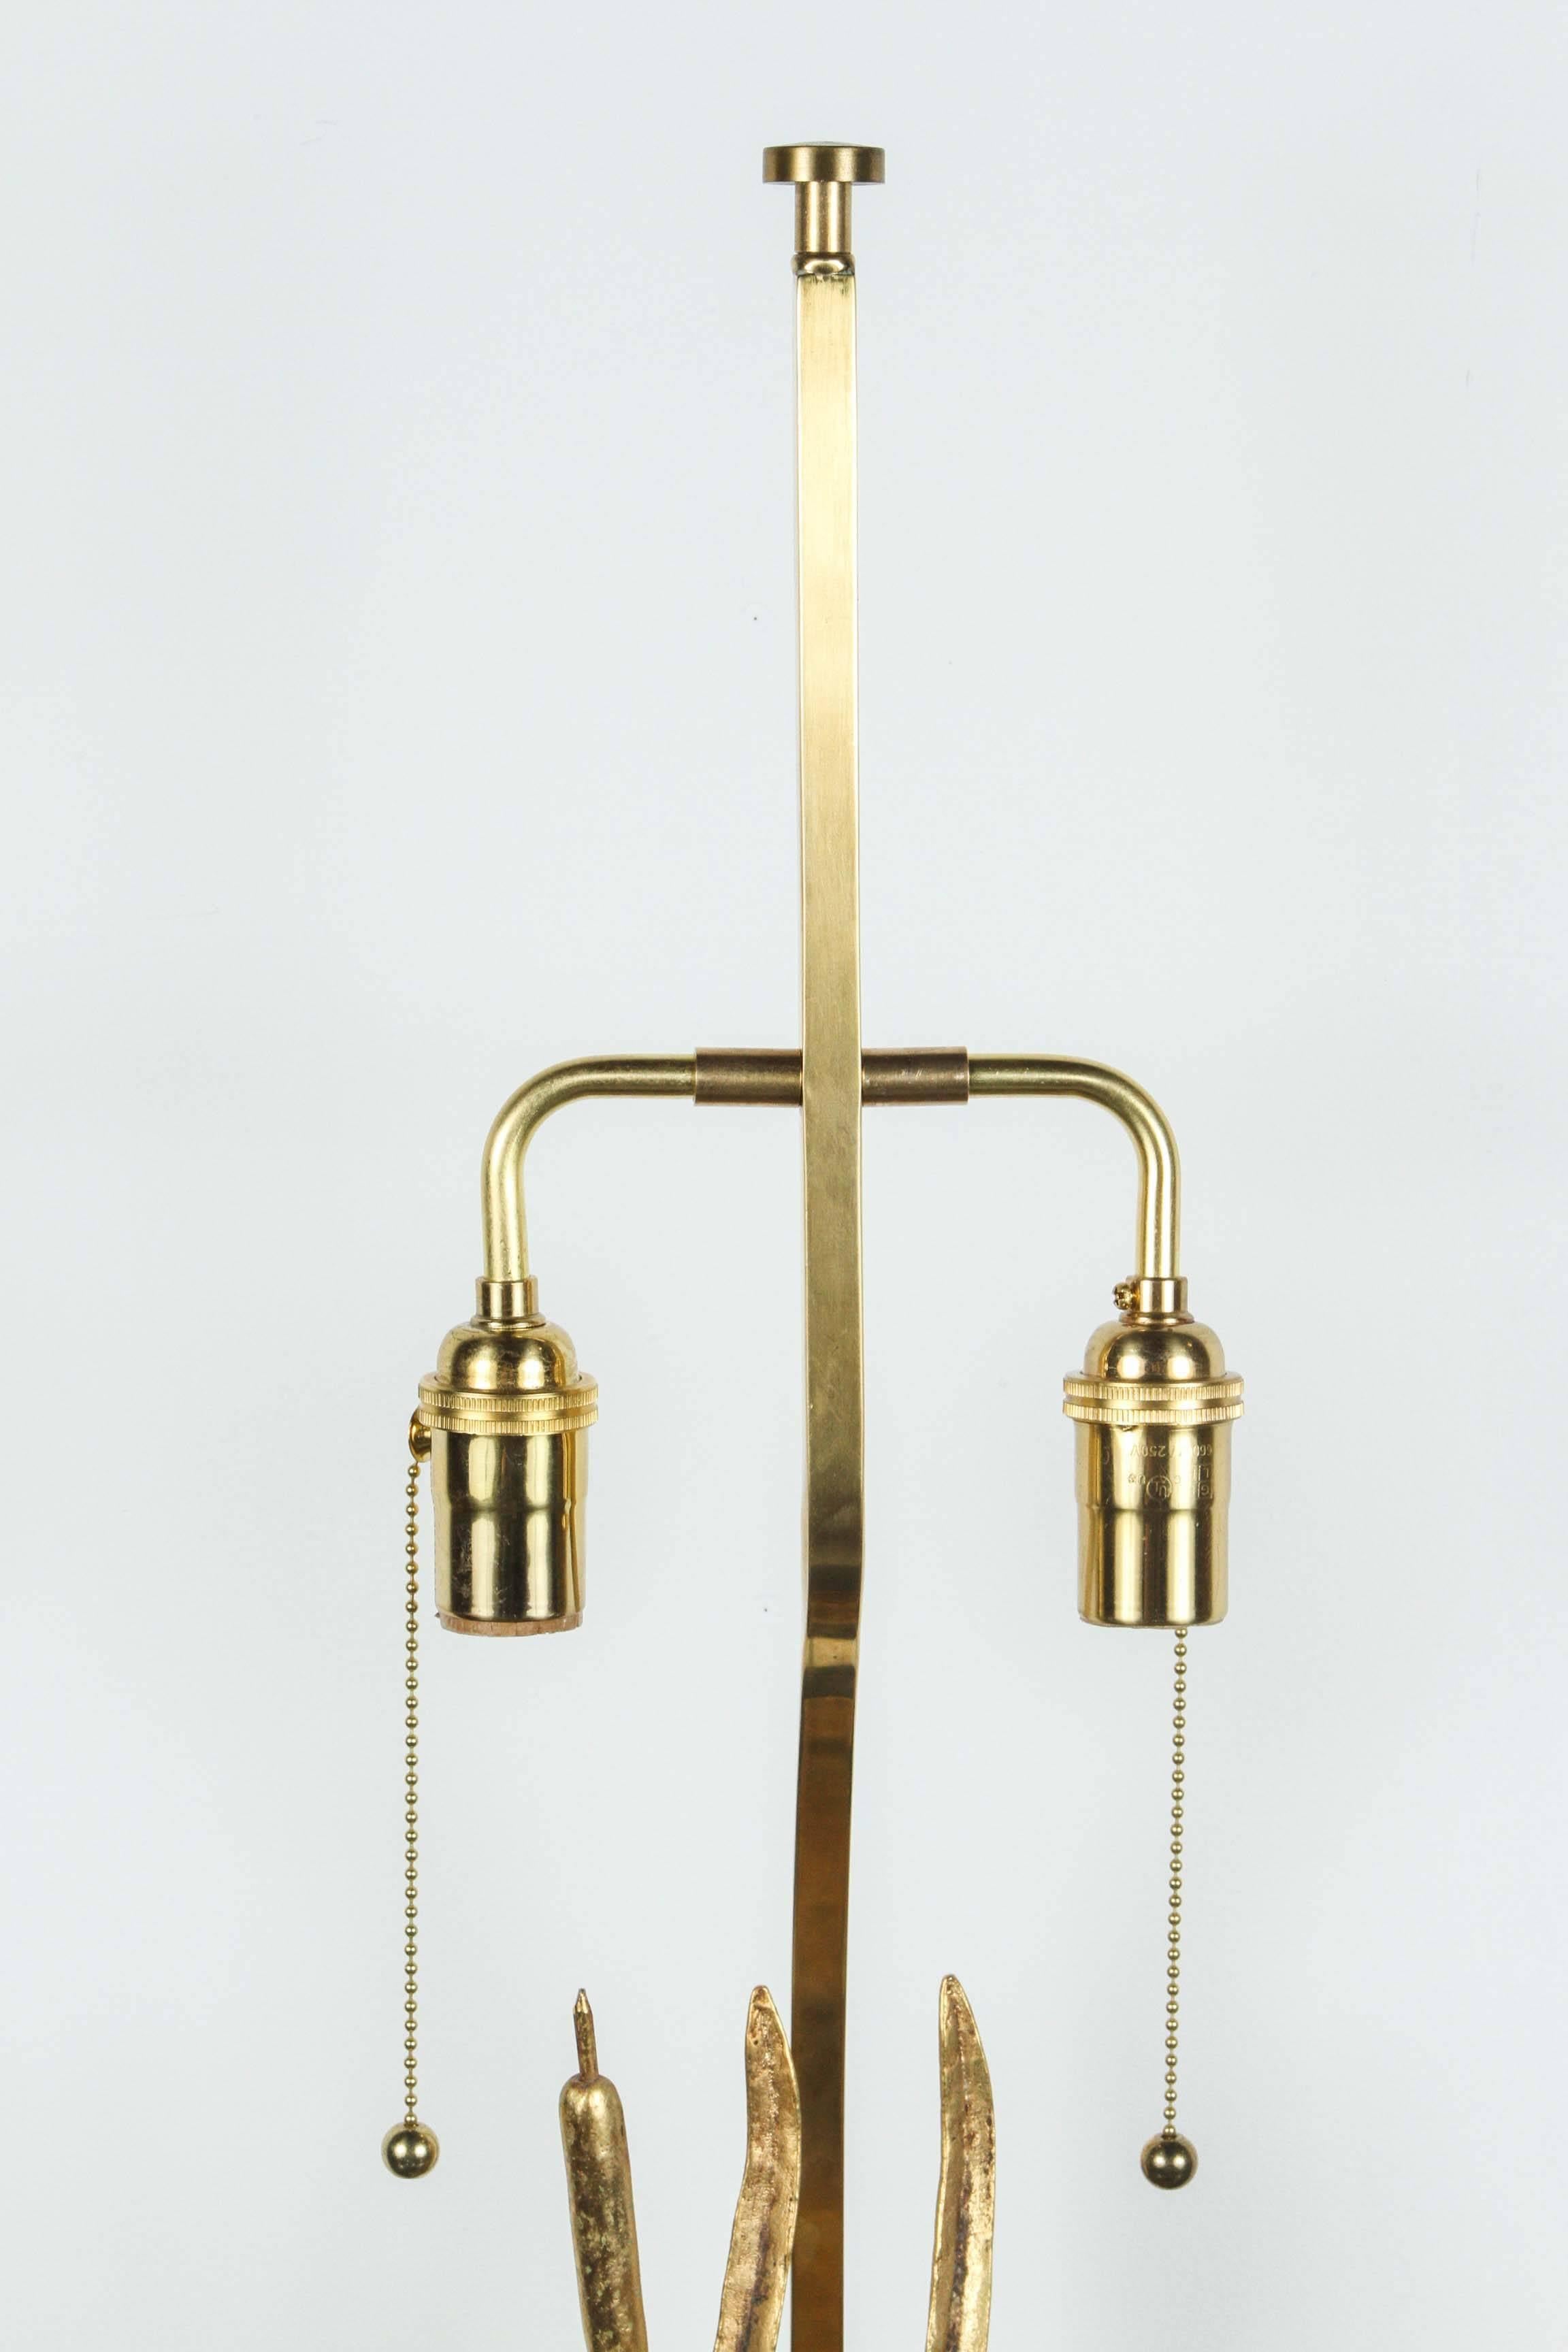 Élégante lampe avec une sculpture stylisée d'un canard prenant son envol.
La lampe italienne dans les tons d'or est nouvellement recâblée avec une double grappe en laiton poli et une base en laiton, la lampe est signée Lancia.